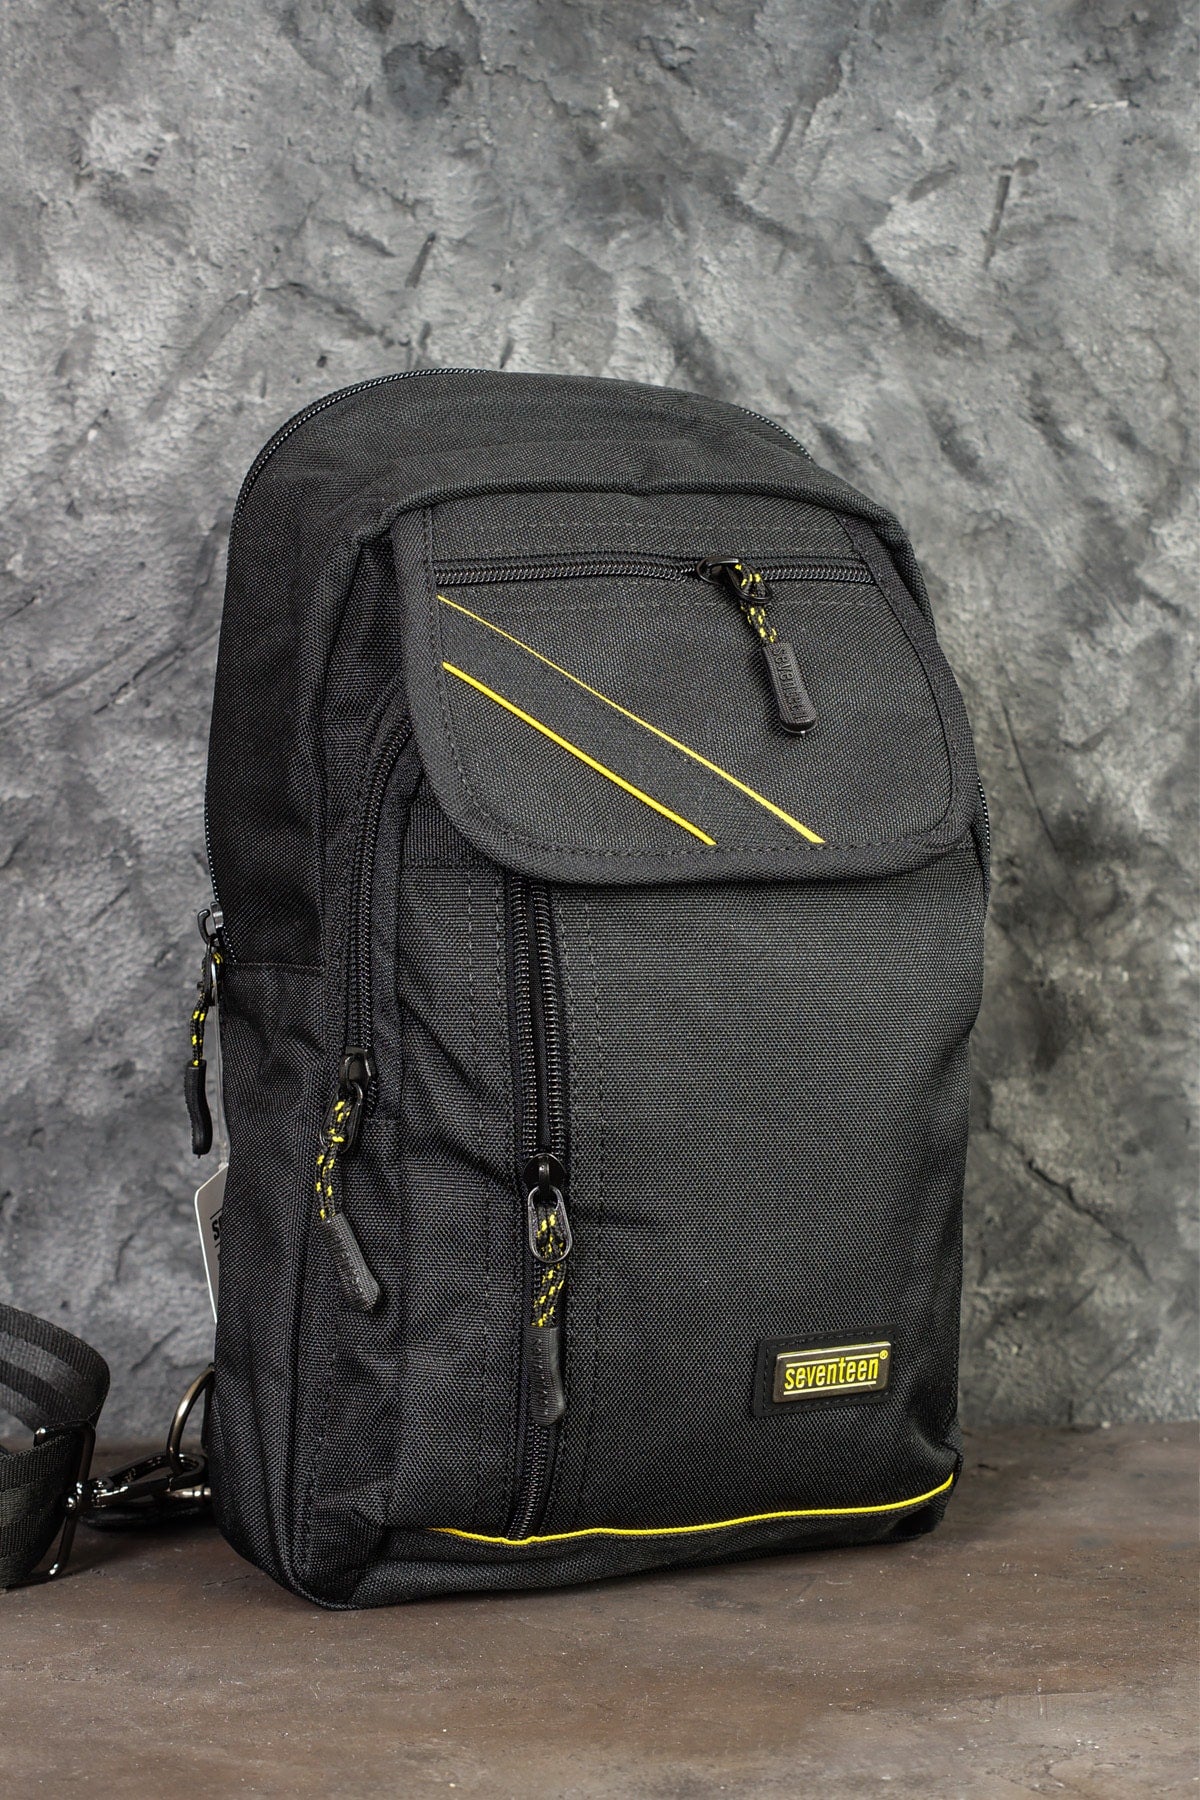 Cross Back Shoulder Chest Waterproof Strap Unisex Black Bag 4926